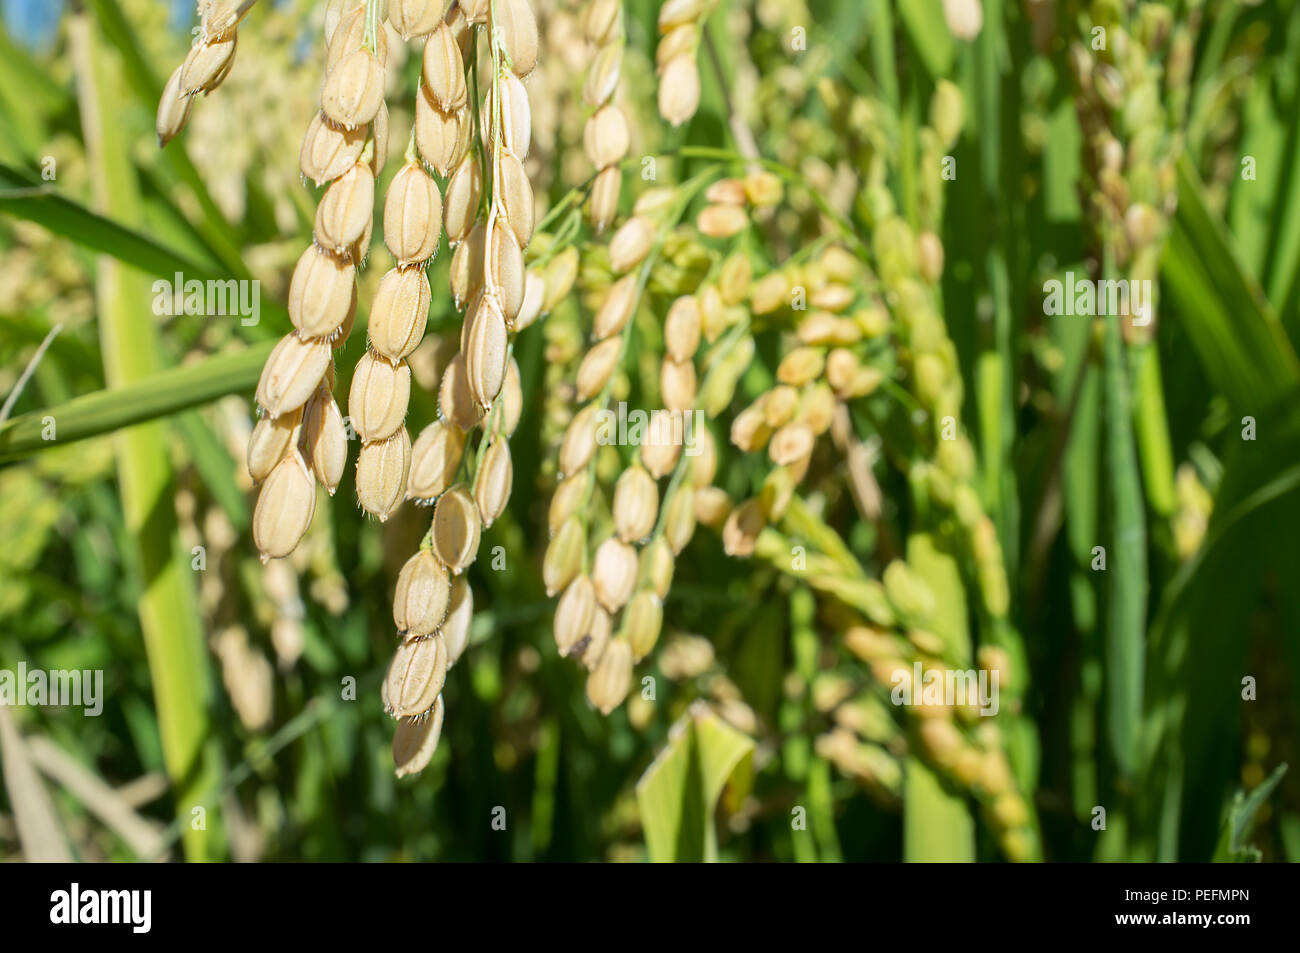 Les plants de riz à maturité croissante de céréales complètes dans les rizières, Vegas Bajas del Guadiana, l'Espagne. Libre Banque D'Images